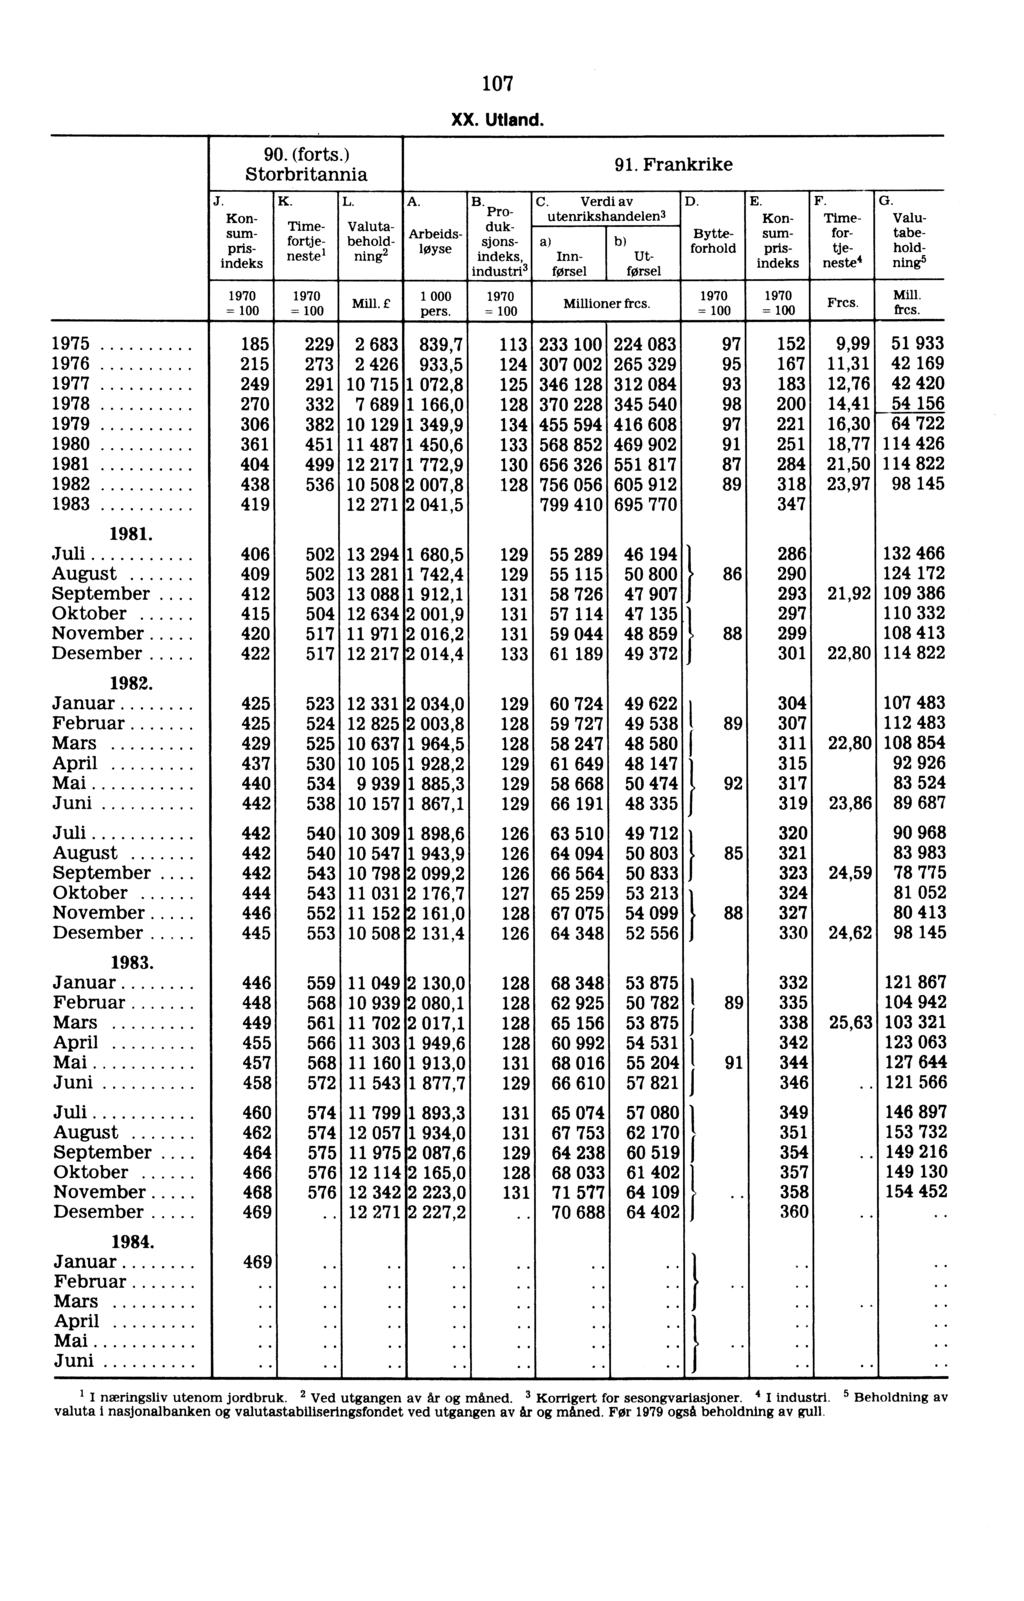 - 90. (forts.) Storbritannia 1970 = K. J. Kon- sum- * indeks Timefortjeneste i L., ` 1970 Mill. E =, A. Valutabeholdning2 Arbeids- Wyse 1 000 pers. 107 XX. Utland., B. Pro" duksjonsindeks, industri3.